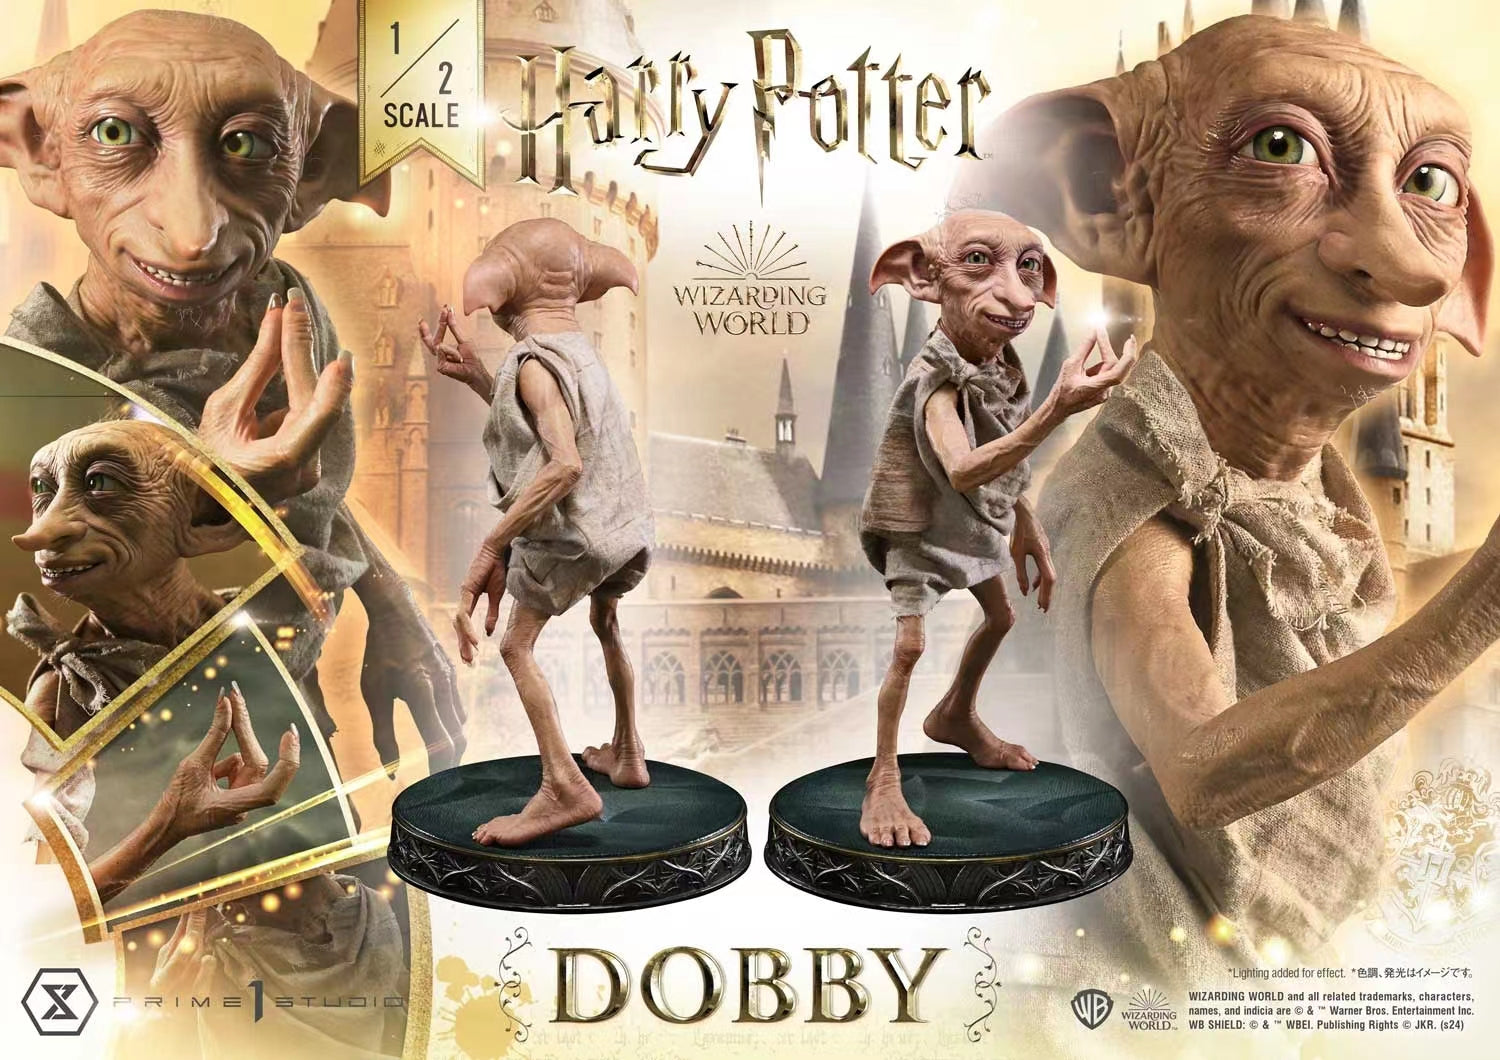 Prime 1 Studio - Dobby [2 Variants]